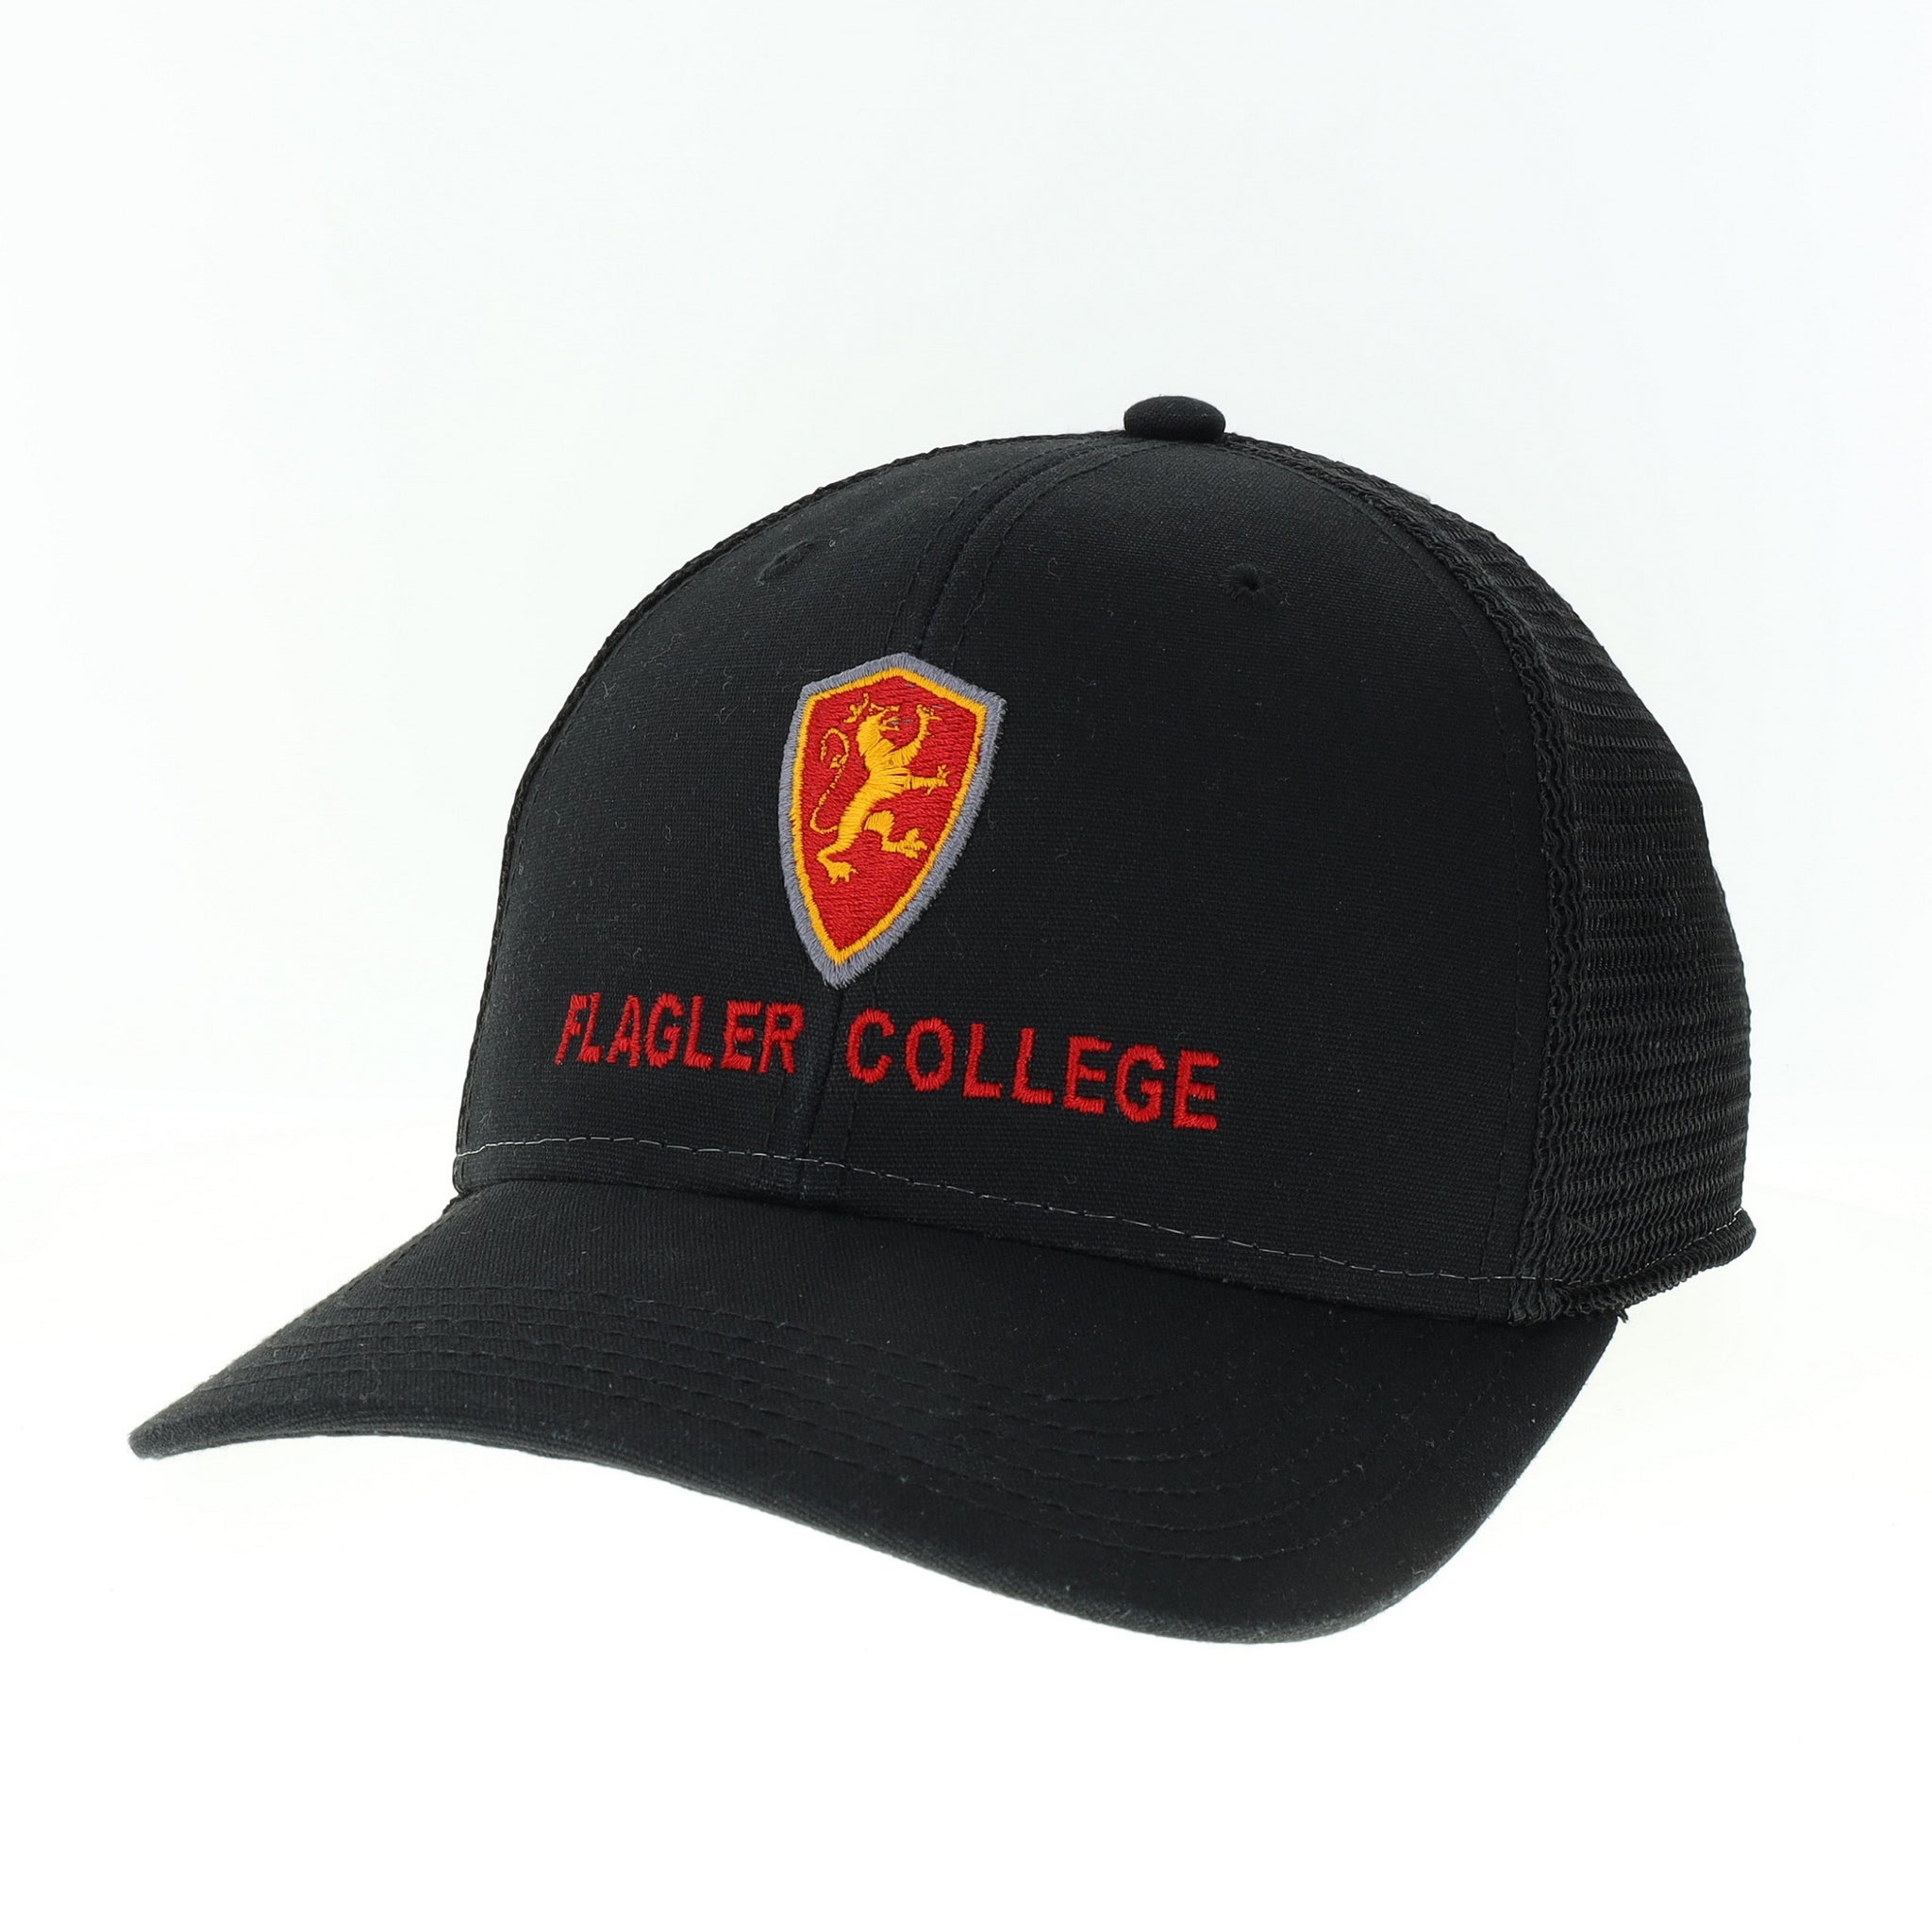 Black hat with black mesh back. Flagler College Shield logo over red embroidered letters saying Flagler College